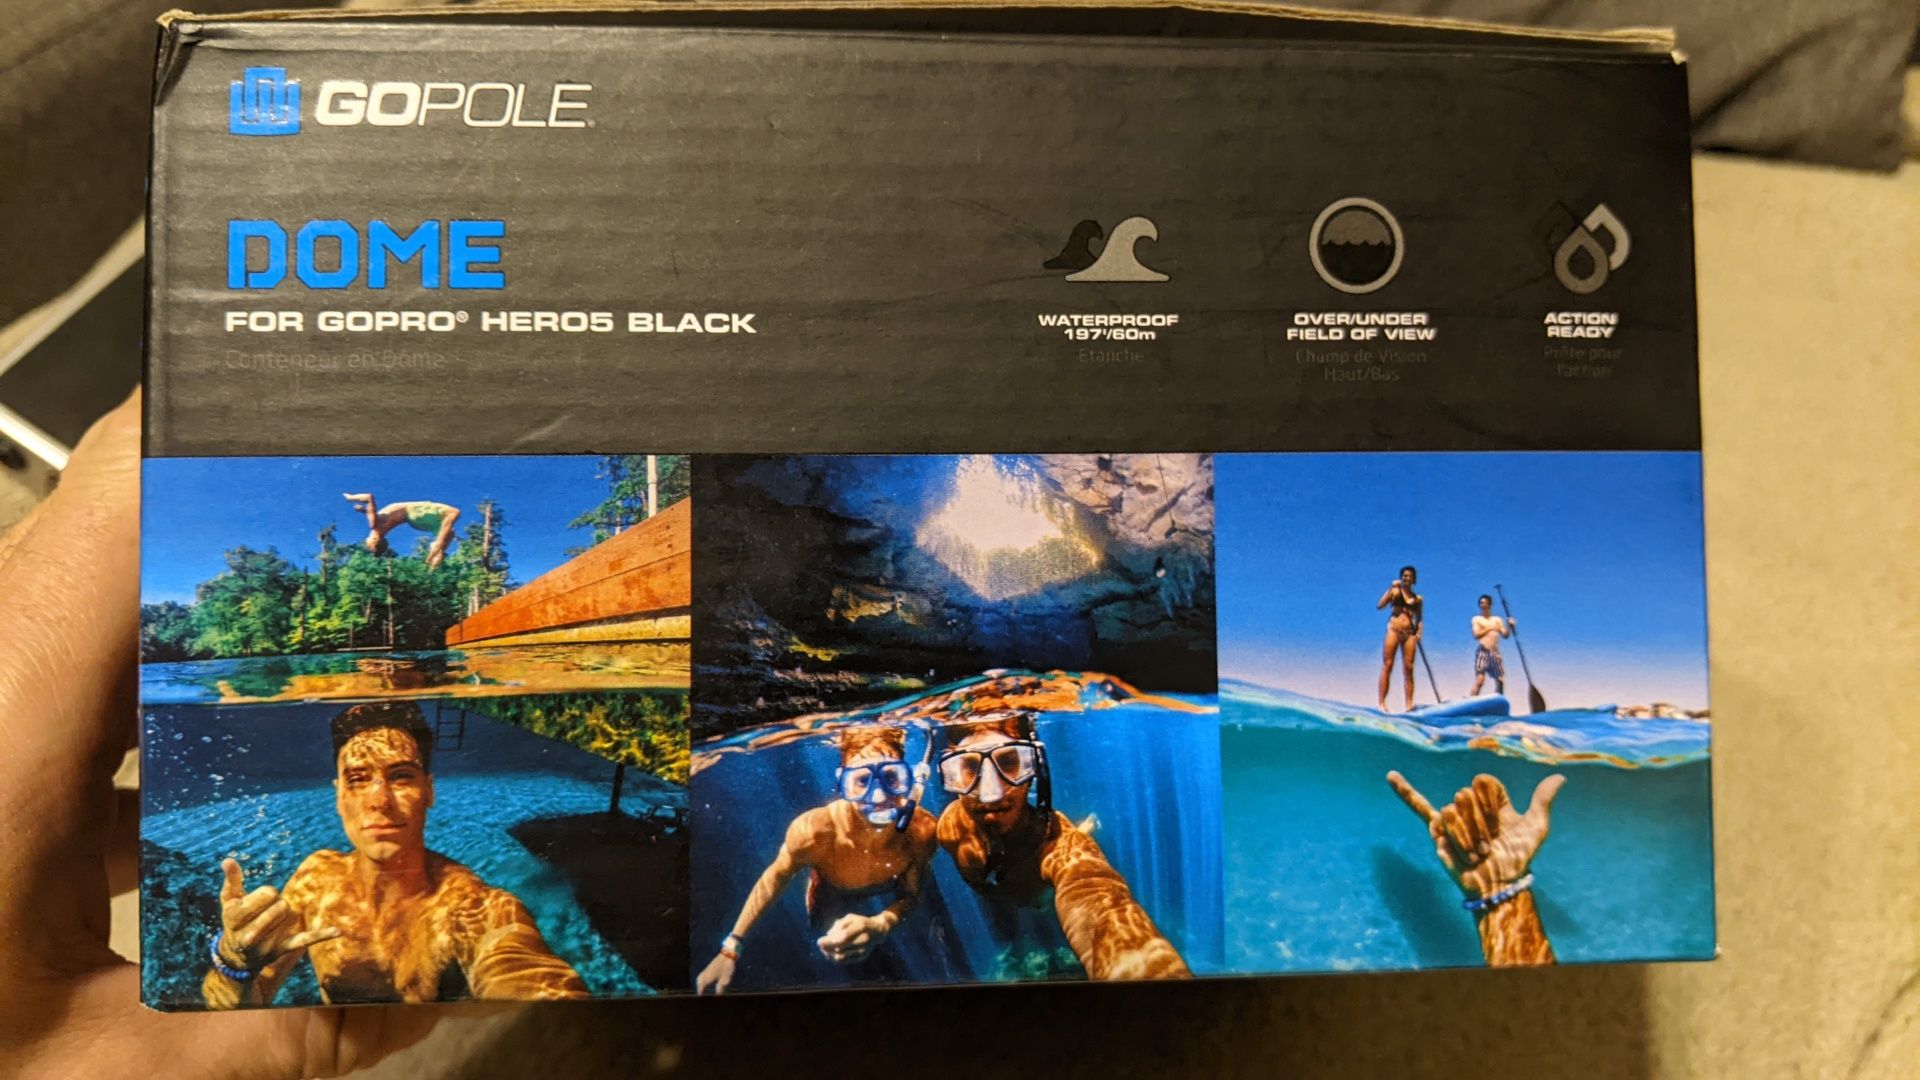 Подводный купол GOPOLE DOME для GoPro Hero5